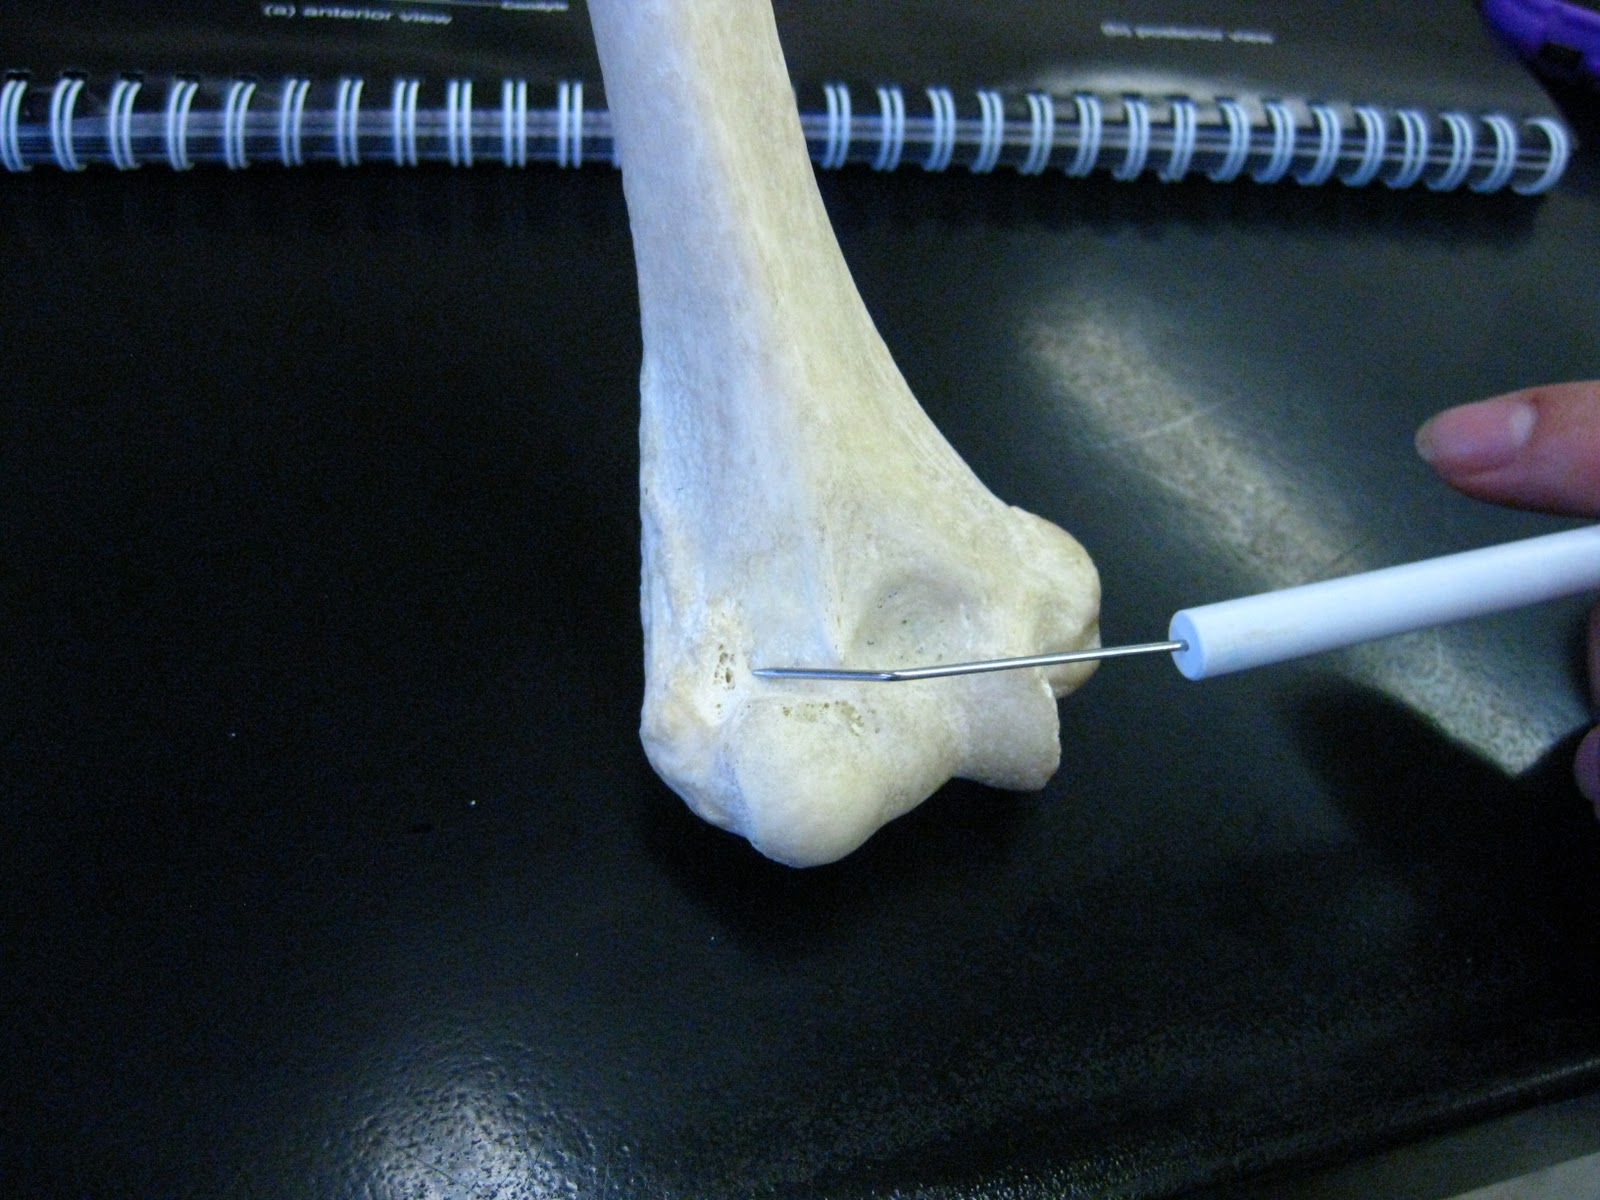 Boned: Human Skeleton - humerus